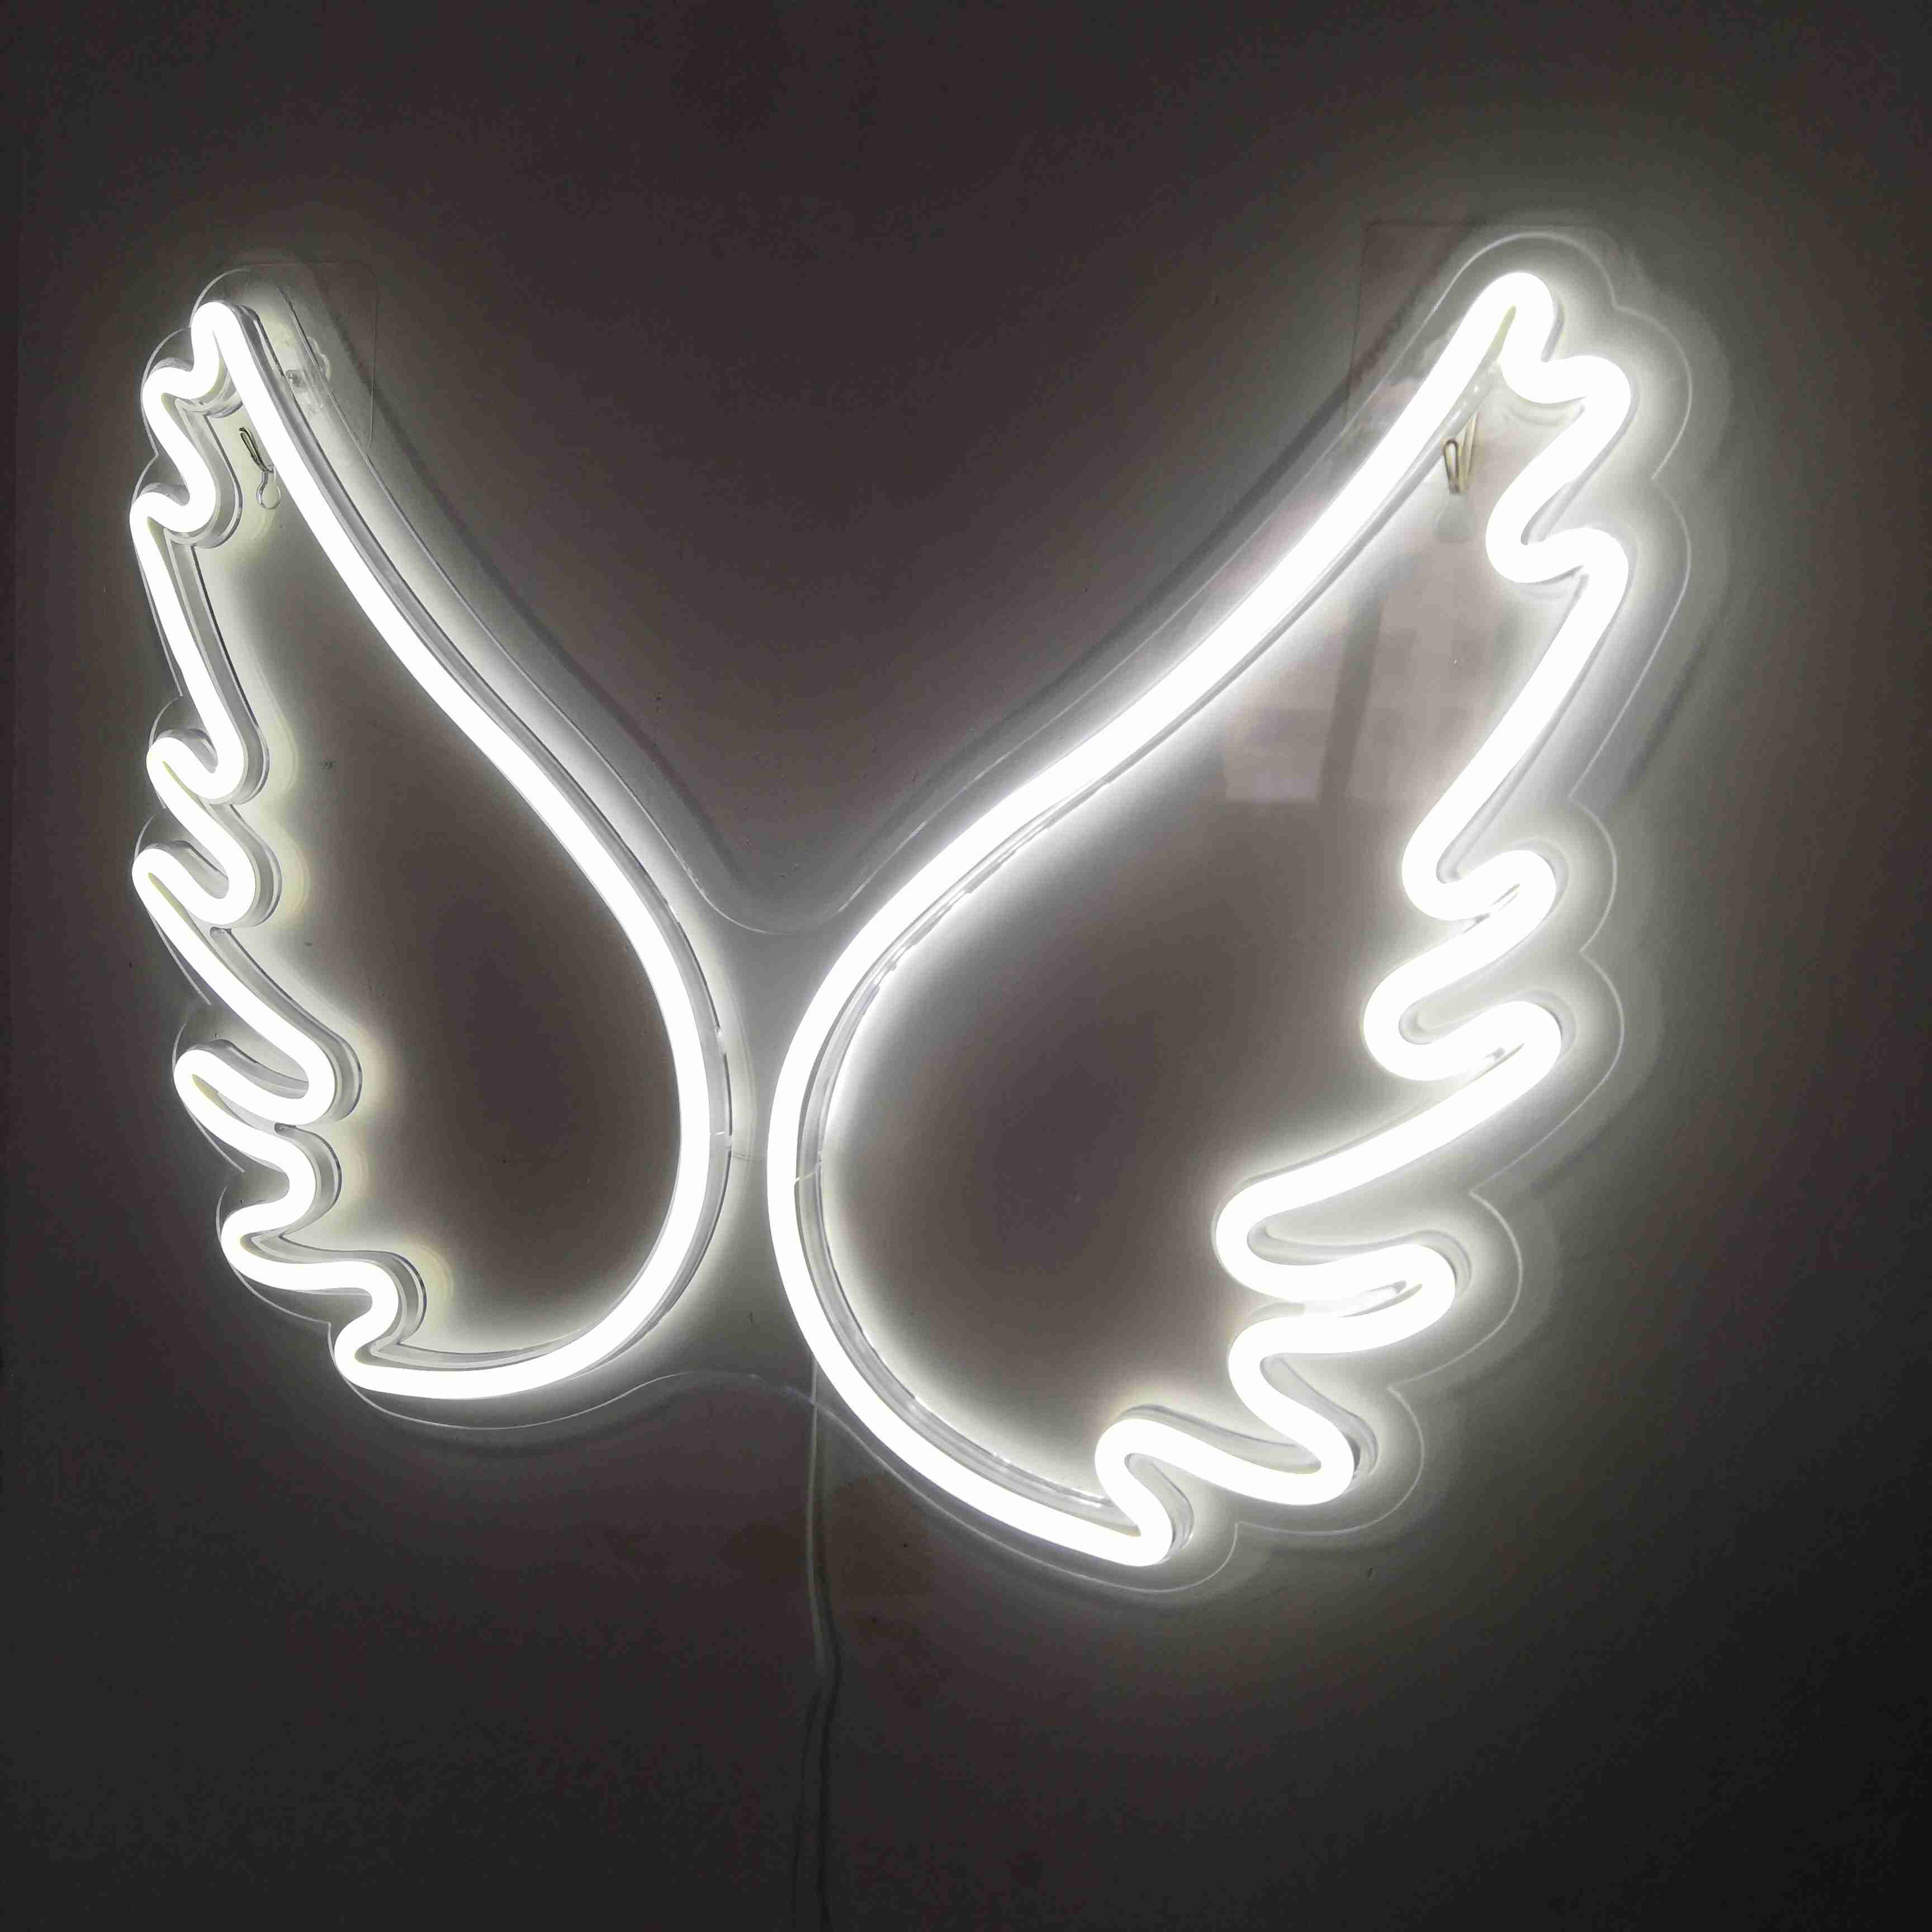 NEON LED Licht, dekorative Wand-Leuchte, Flügel weiß, 45 x 34 x 2 cm